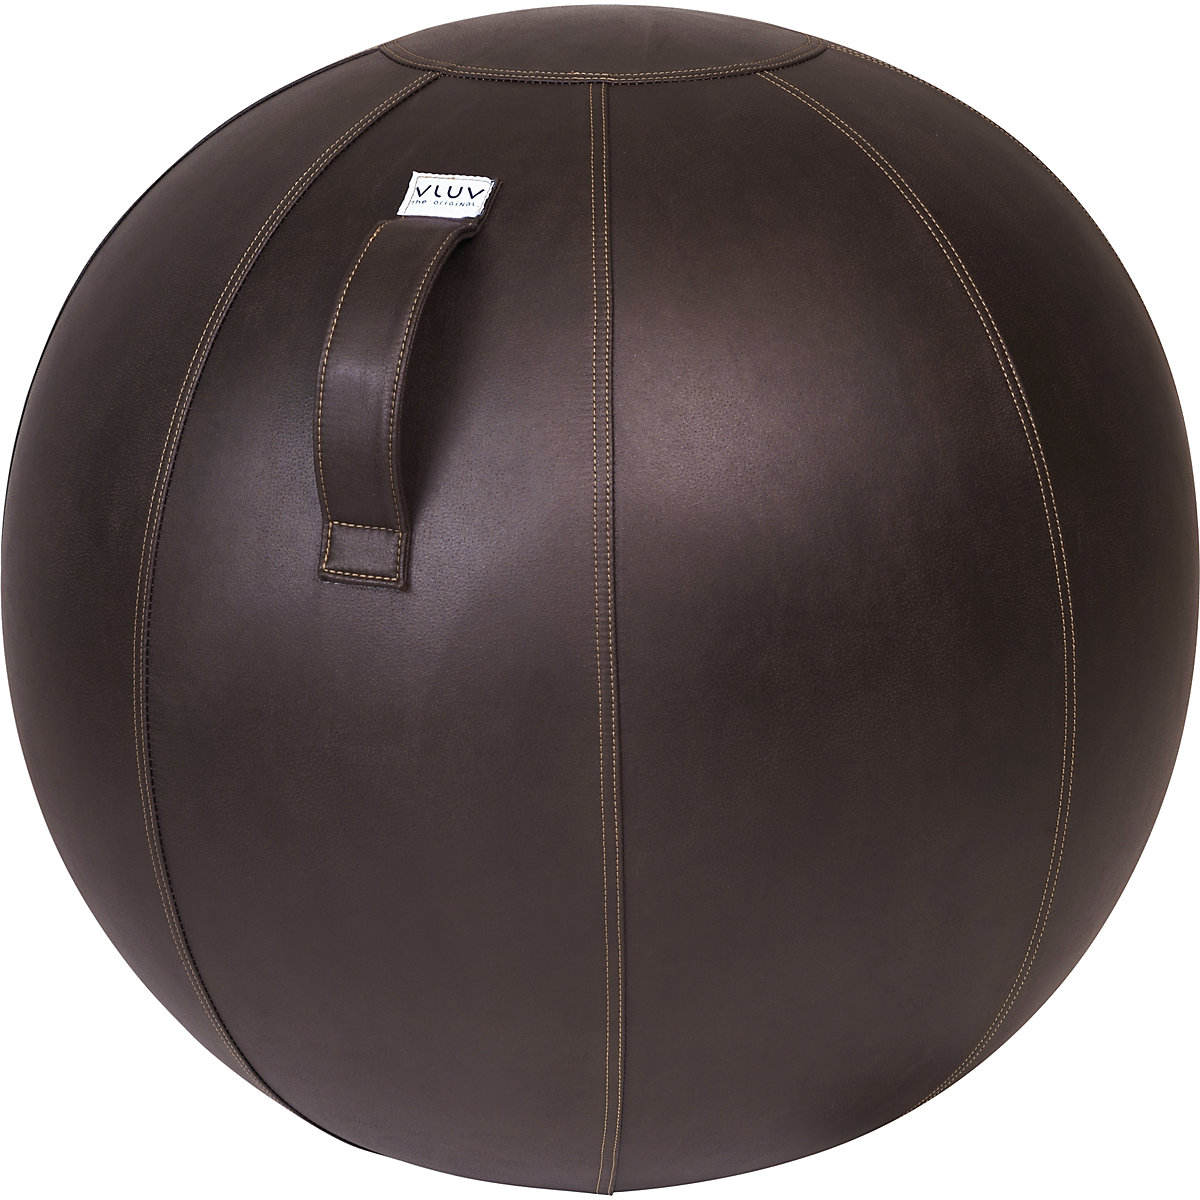 Sedací míč VEEL – VLUV, imitace kůže z mikrovlákna, 700 – 750 mm, mokka-9